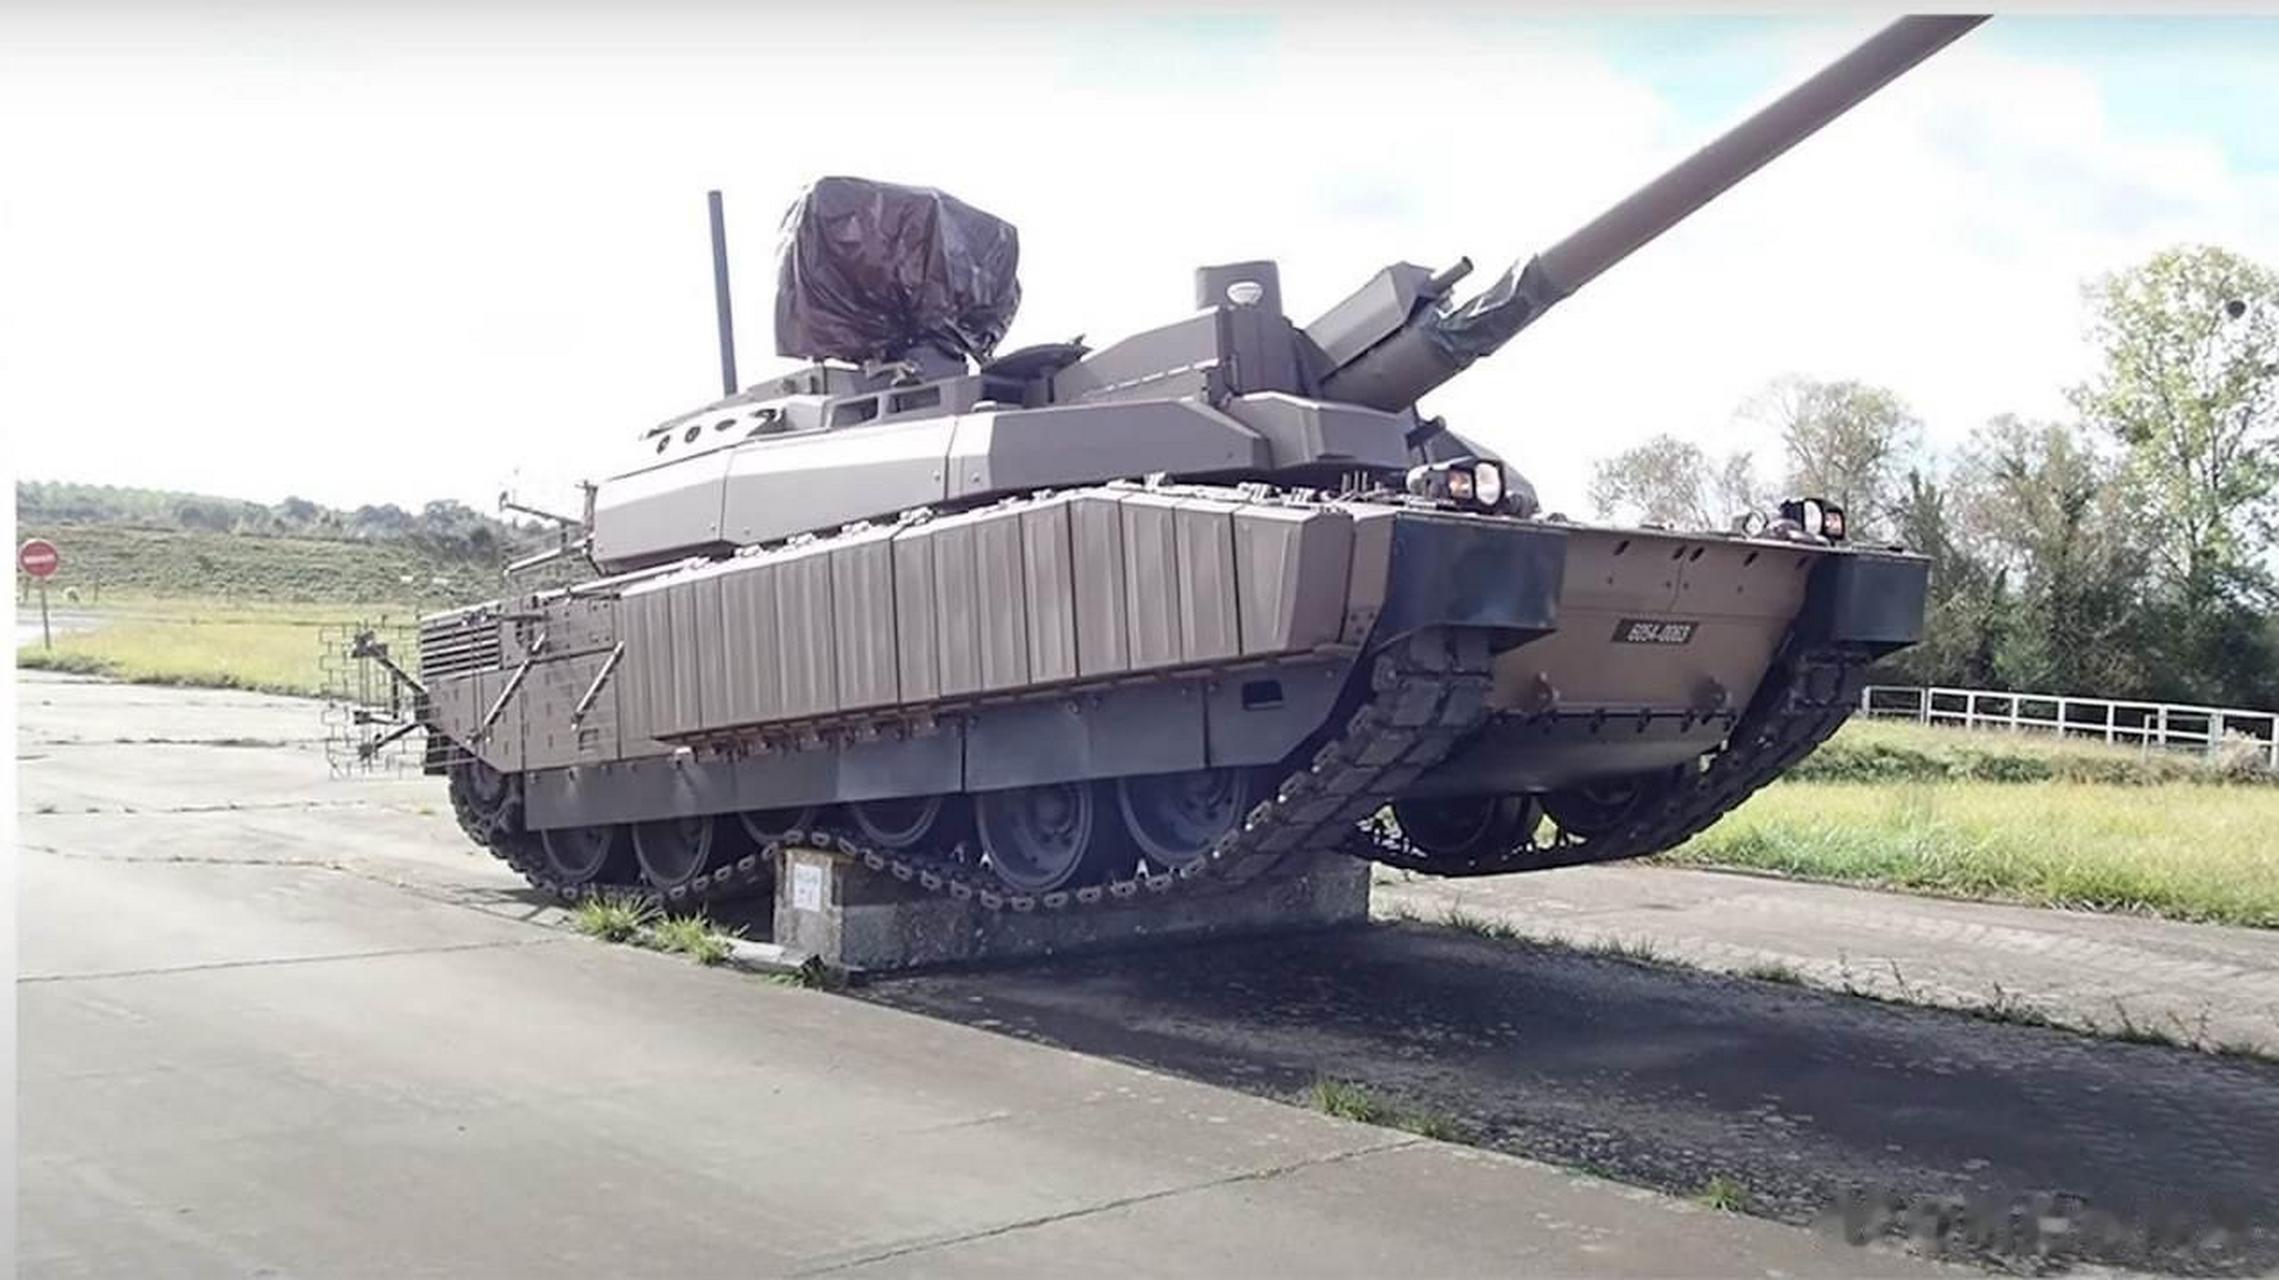 法国陆军开始测试新型勒克莱尔xlr主战坦克,该坦克装备一门120毫米